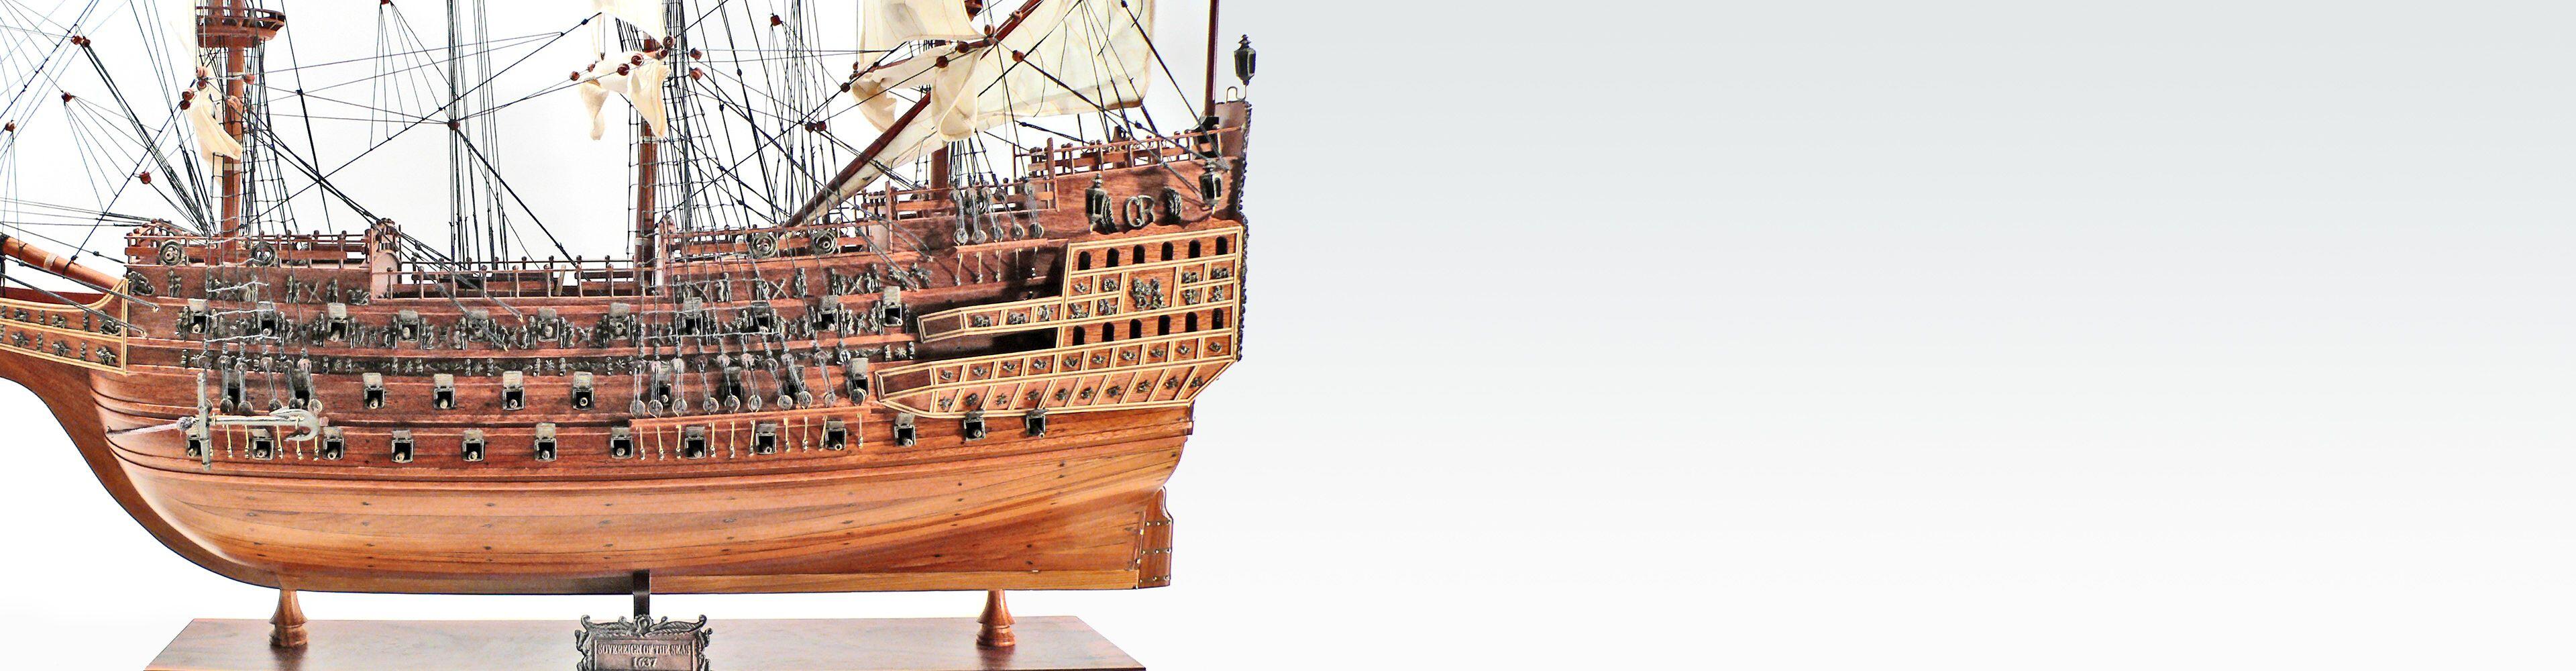 Wunderschöne historische Schiffsmodelle aus Holz